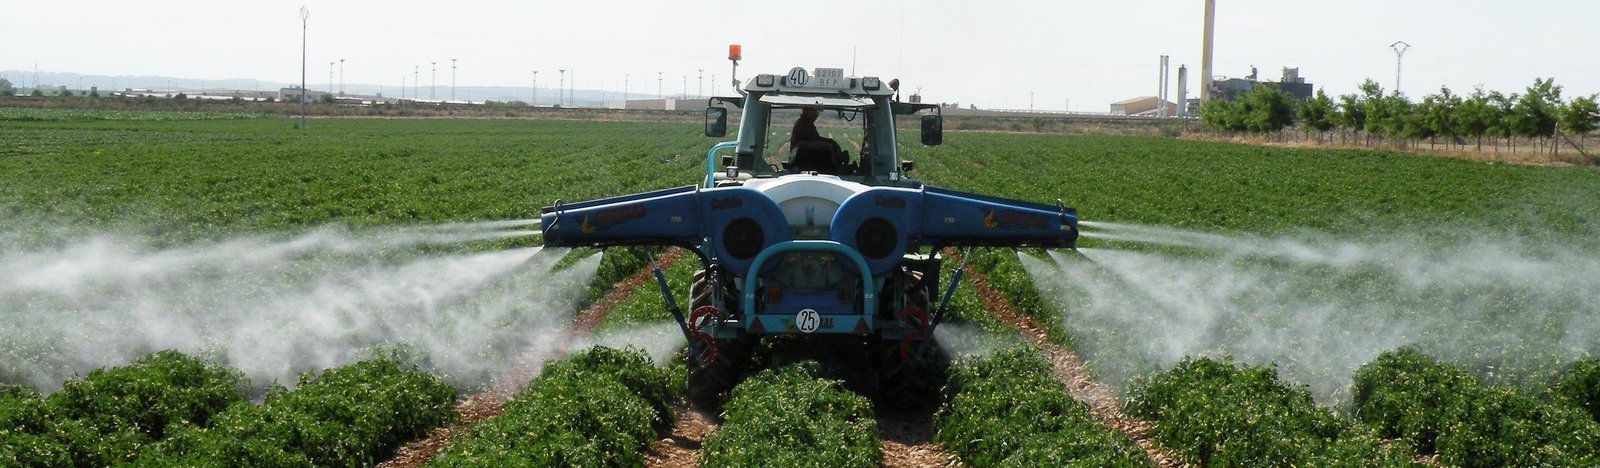 Cultivo de tomate - Control químico en el cultivo de tomate - Tractor aplicando producto químico a un cultivo de tomate